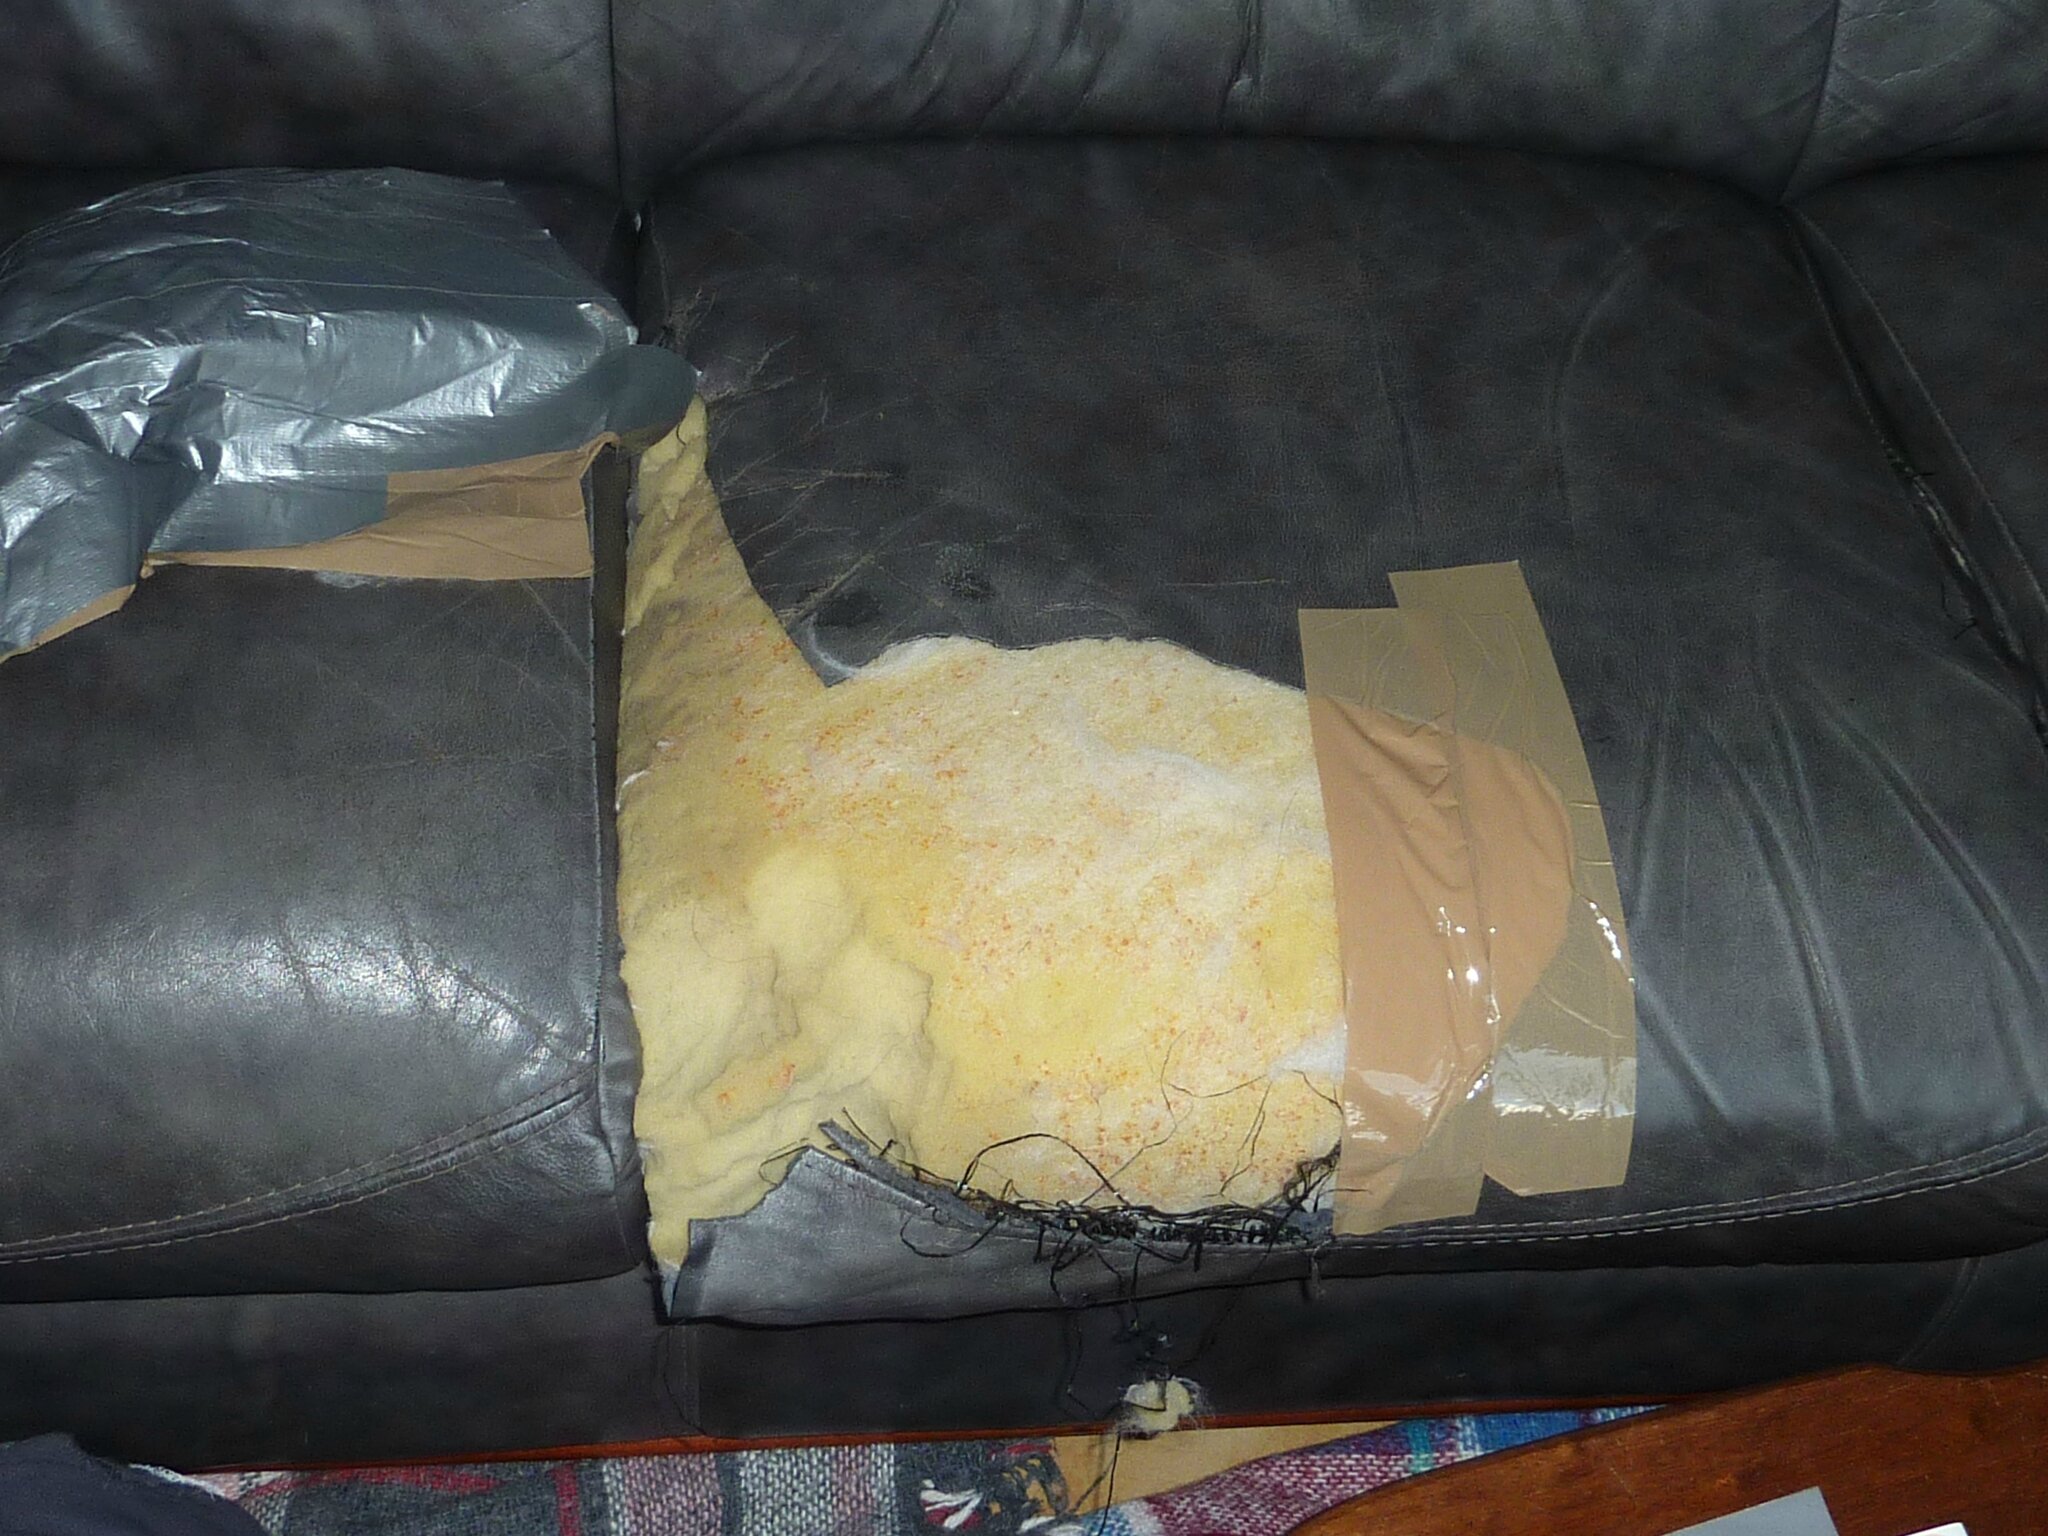 Comment réparer un canapé en simili cuir déchiré ?